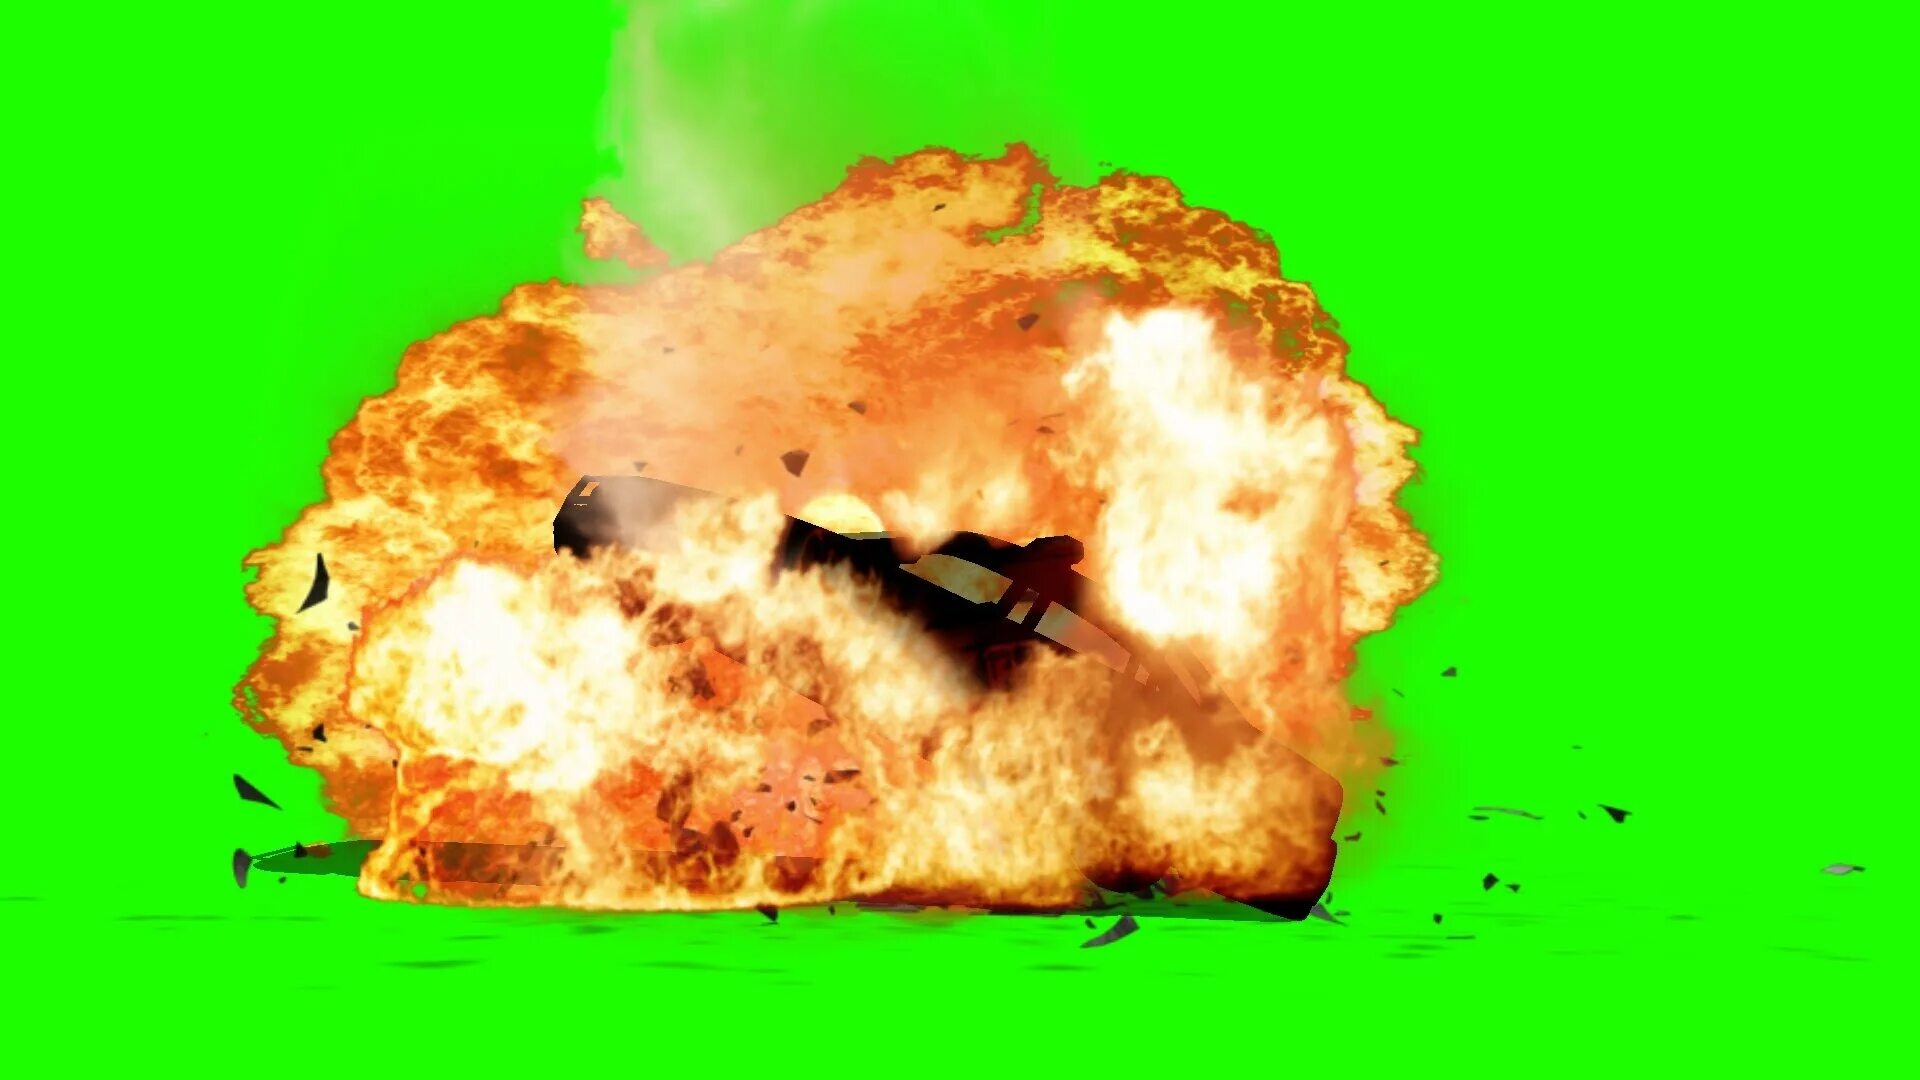 Взрыв отрывок. Взрыв Грин скрин. Ядерный взрыв Грин скрин. Взрыв на зеленом фоне. Взрыв на зелёном фофоне.